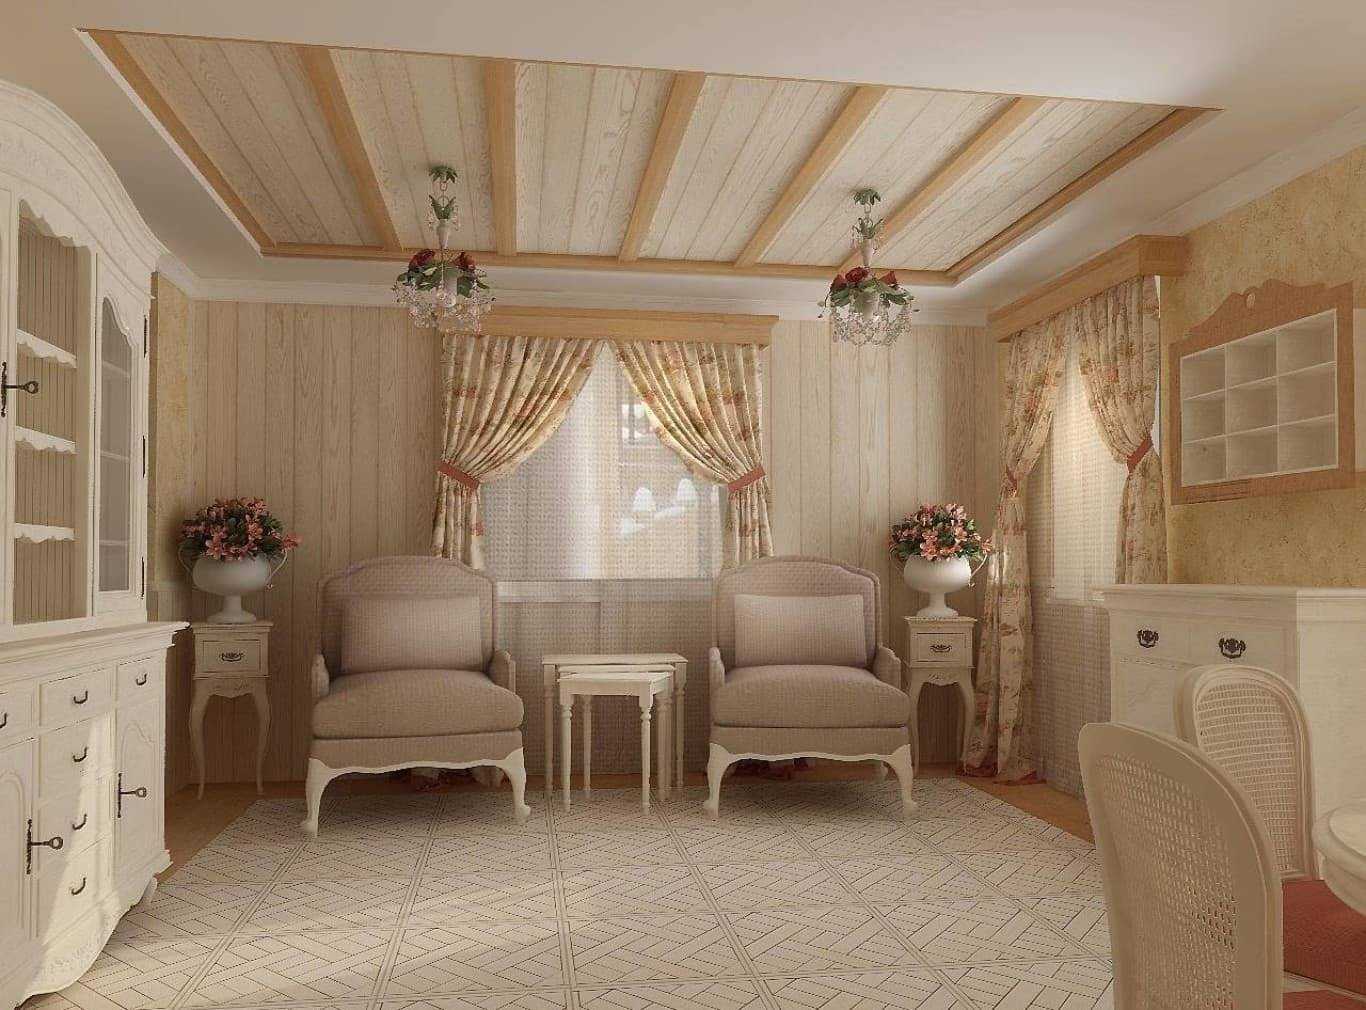 Стиль прованс в интерьере − особенности Отделочные материалы Мебель для прованского интерьера Освещение Дизайн интерьера в стиле прованс для разных помещений